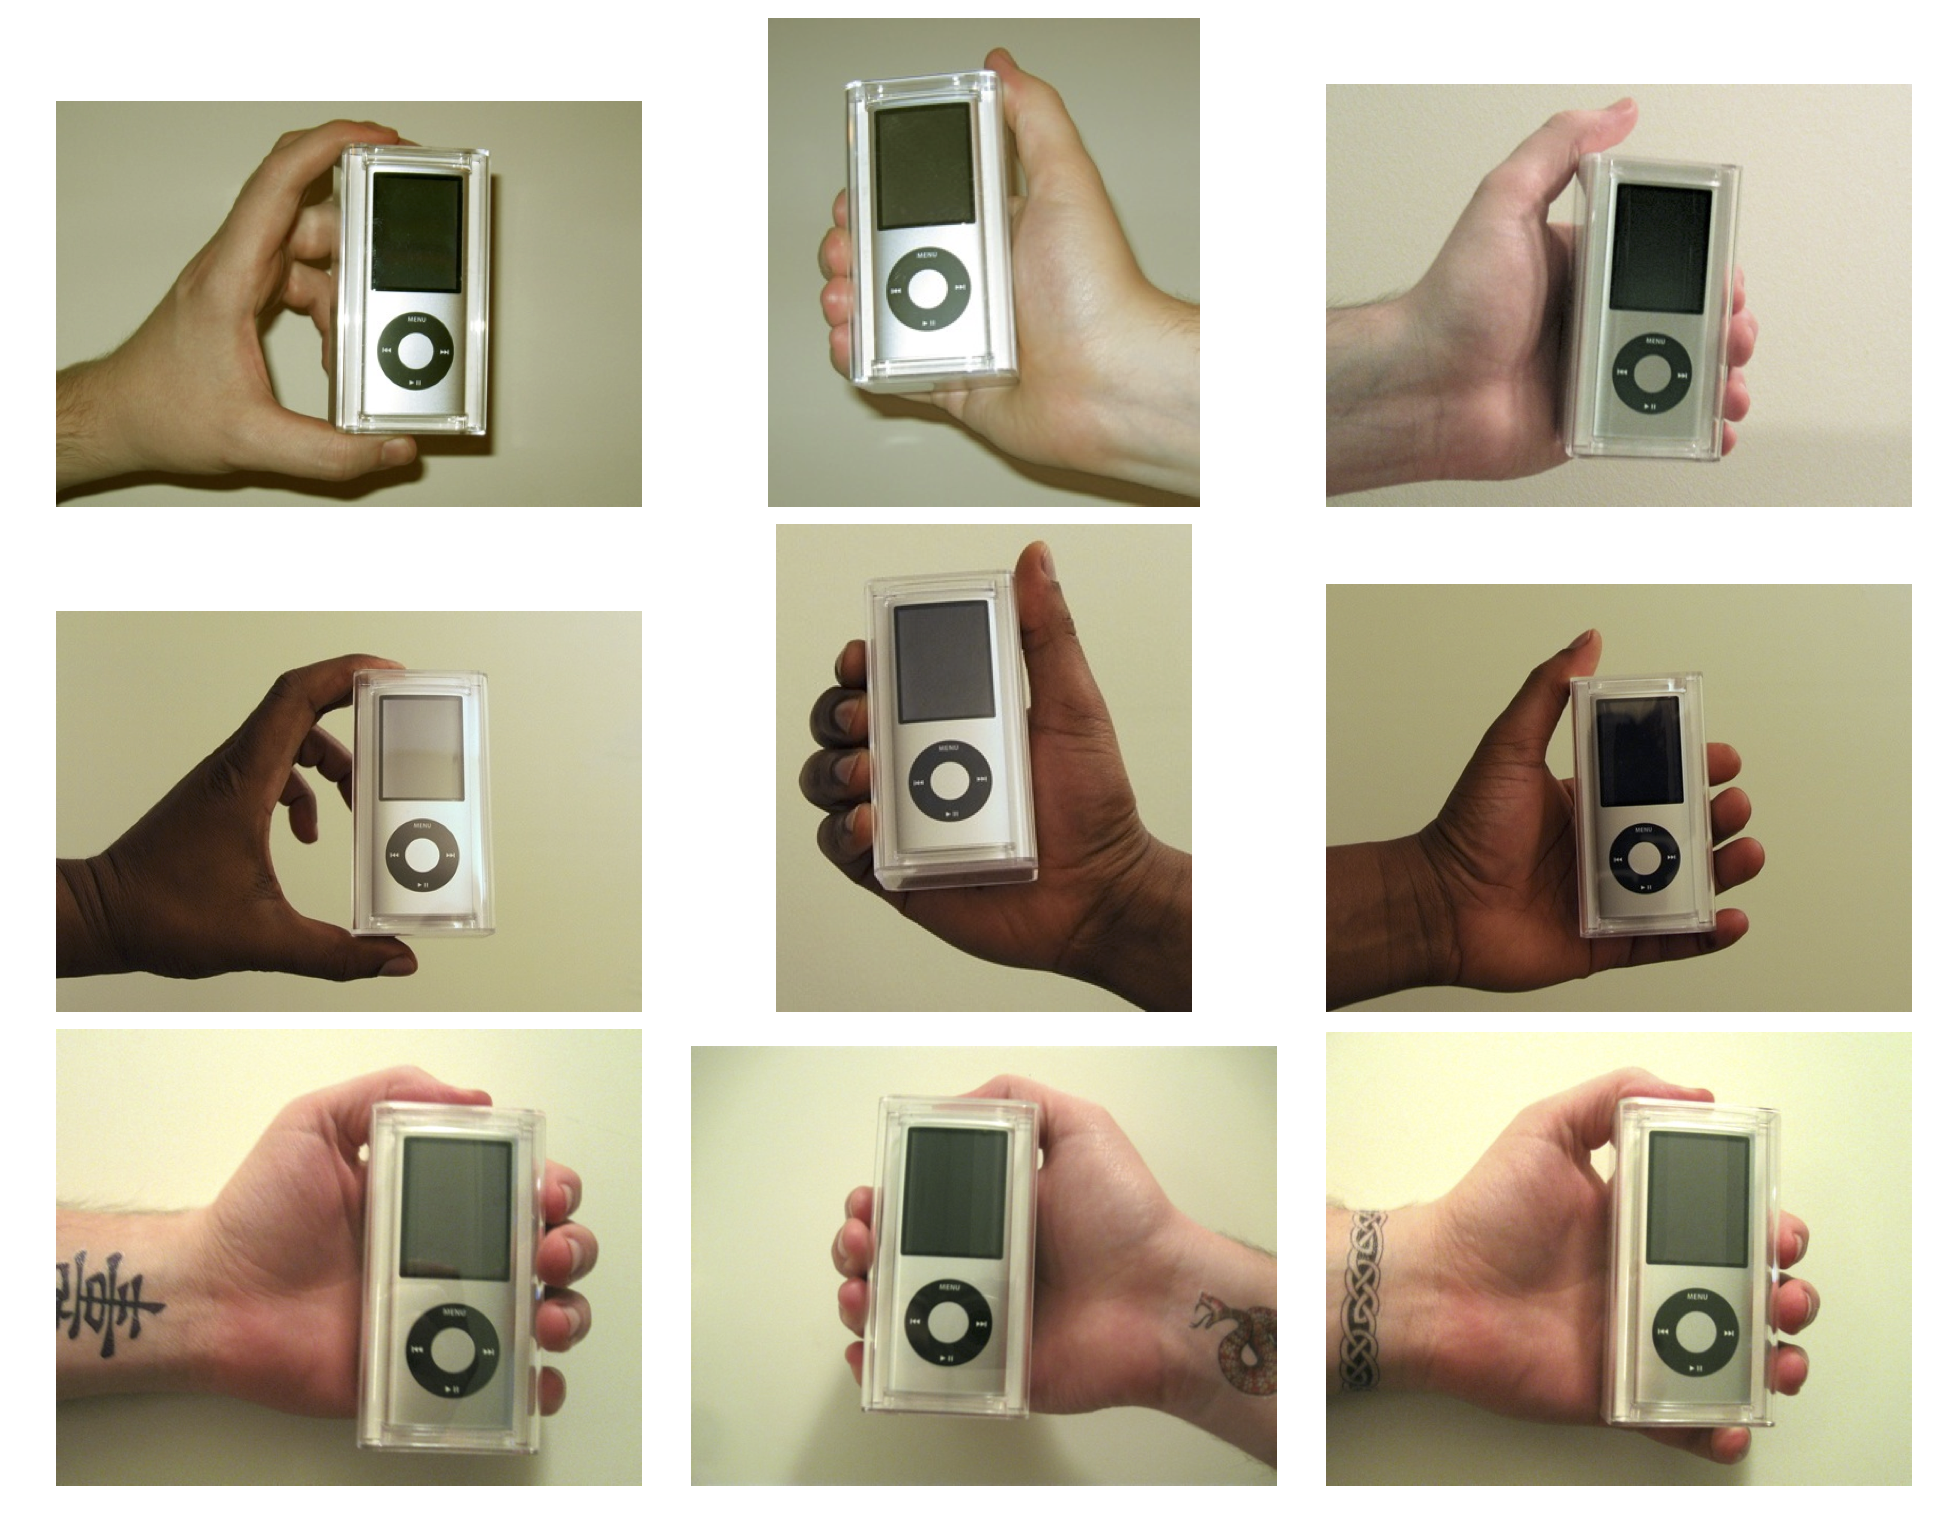 Figura 4.13: Mani utilizzate nell'esperimento di Doleac e Stein (2013). Gli iPod sono stati venduti da venditori con caratteristiche diverse per misurare la discriminazione in un mercato online. Riprodotto con il permesso di Doleac e Stein (2013), figura 1.